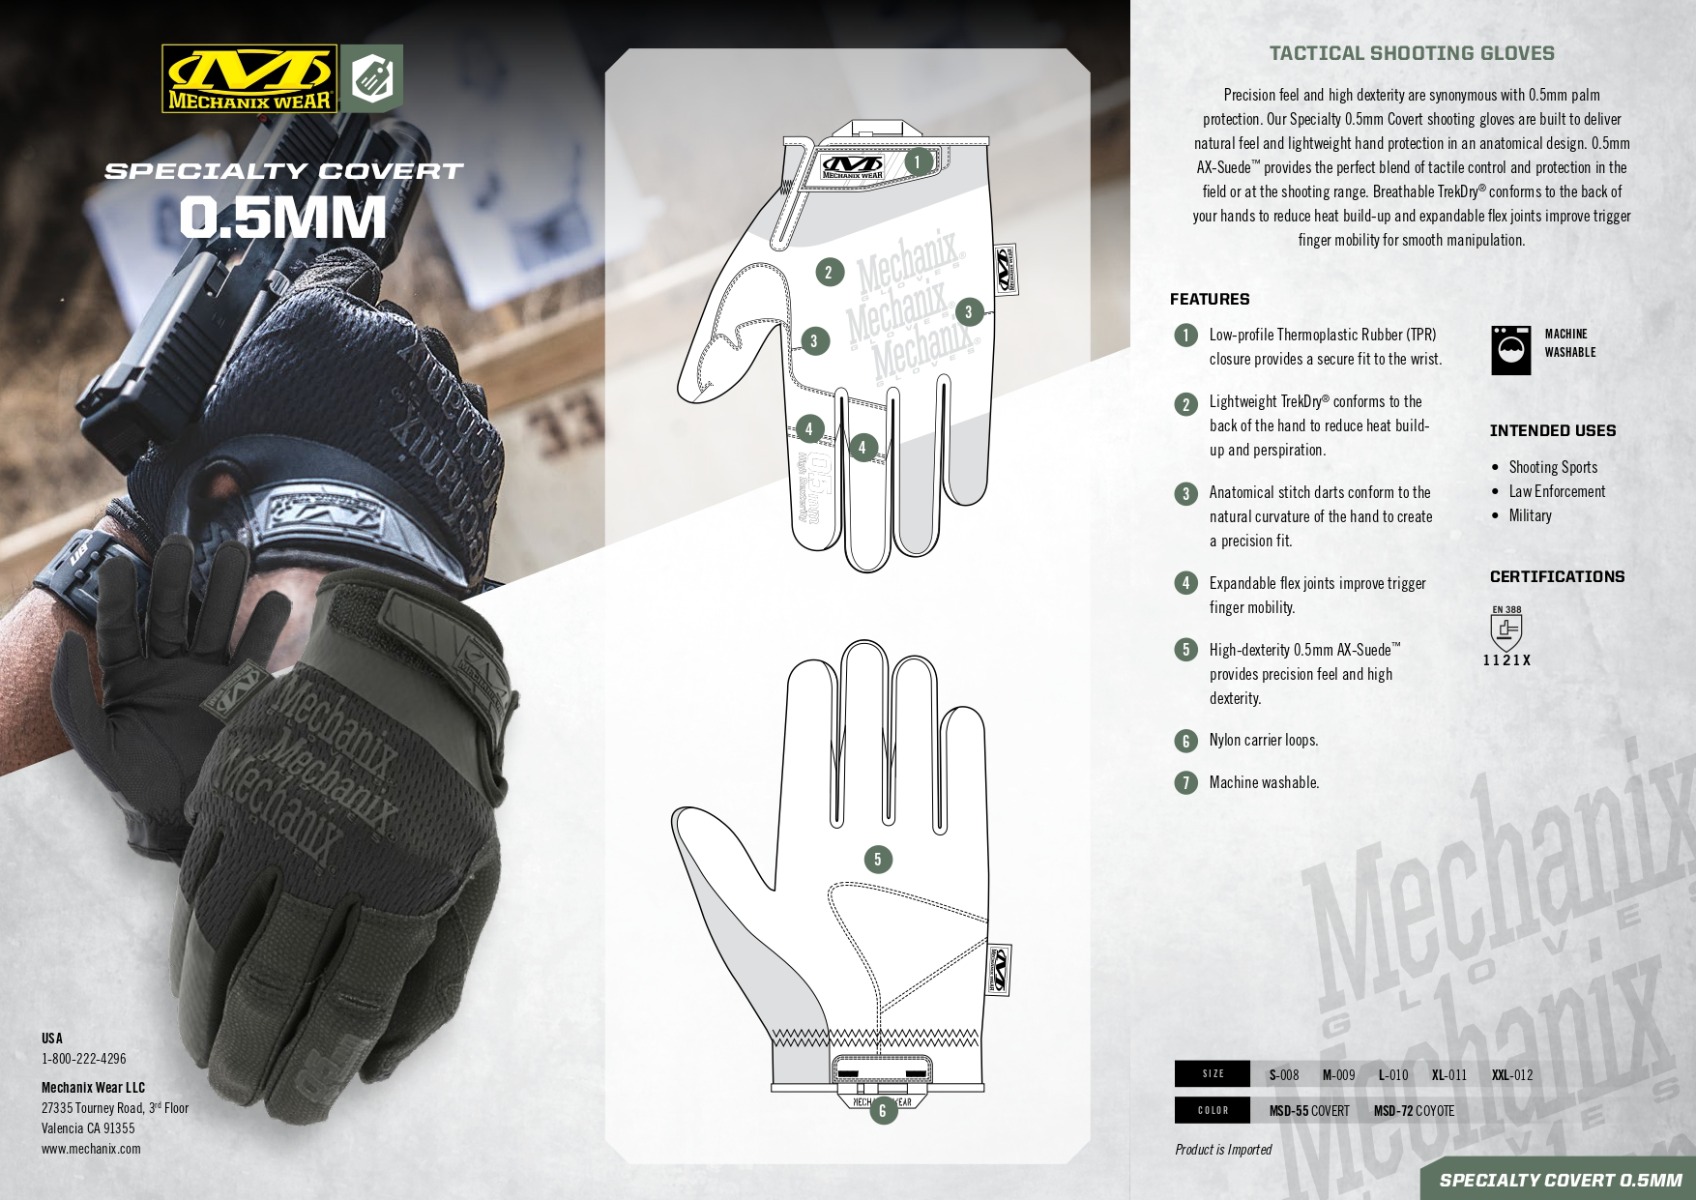  Odkrijte vrhunske taktične rokavice Specialty 0.5 Covert Coyote od Mechanics Wear. Certificirane po standardu EN388: 1122, zagotavljajo visoko zaščito, udobje in odličen oprijem. Idealne za vojsko, policijo, mehanike in druge poklice. Zaupajte v njihovo vrhunsko kakovost in zaščitite svoje roke zdaj!